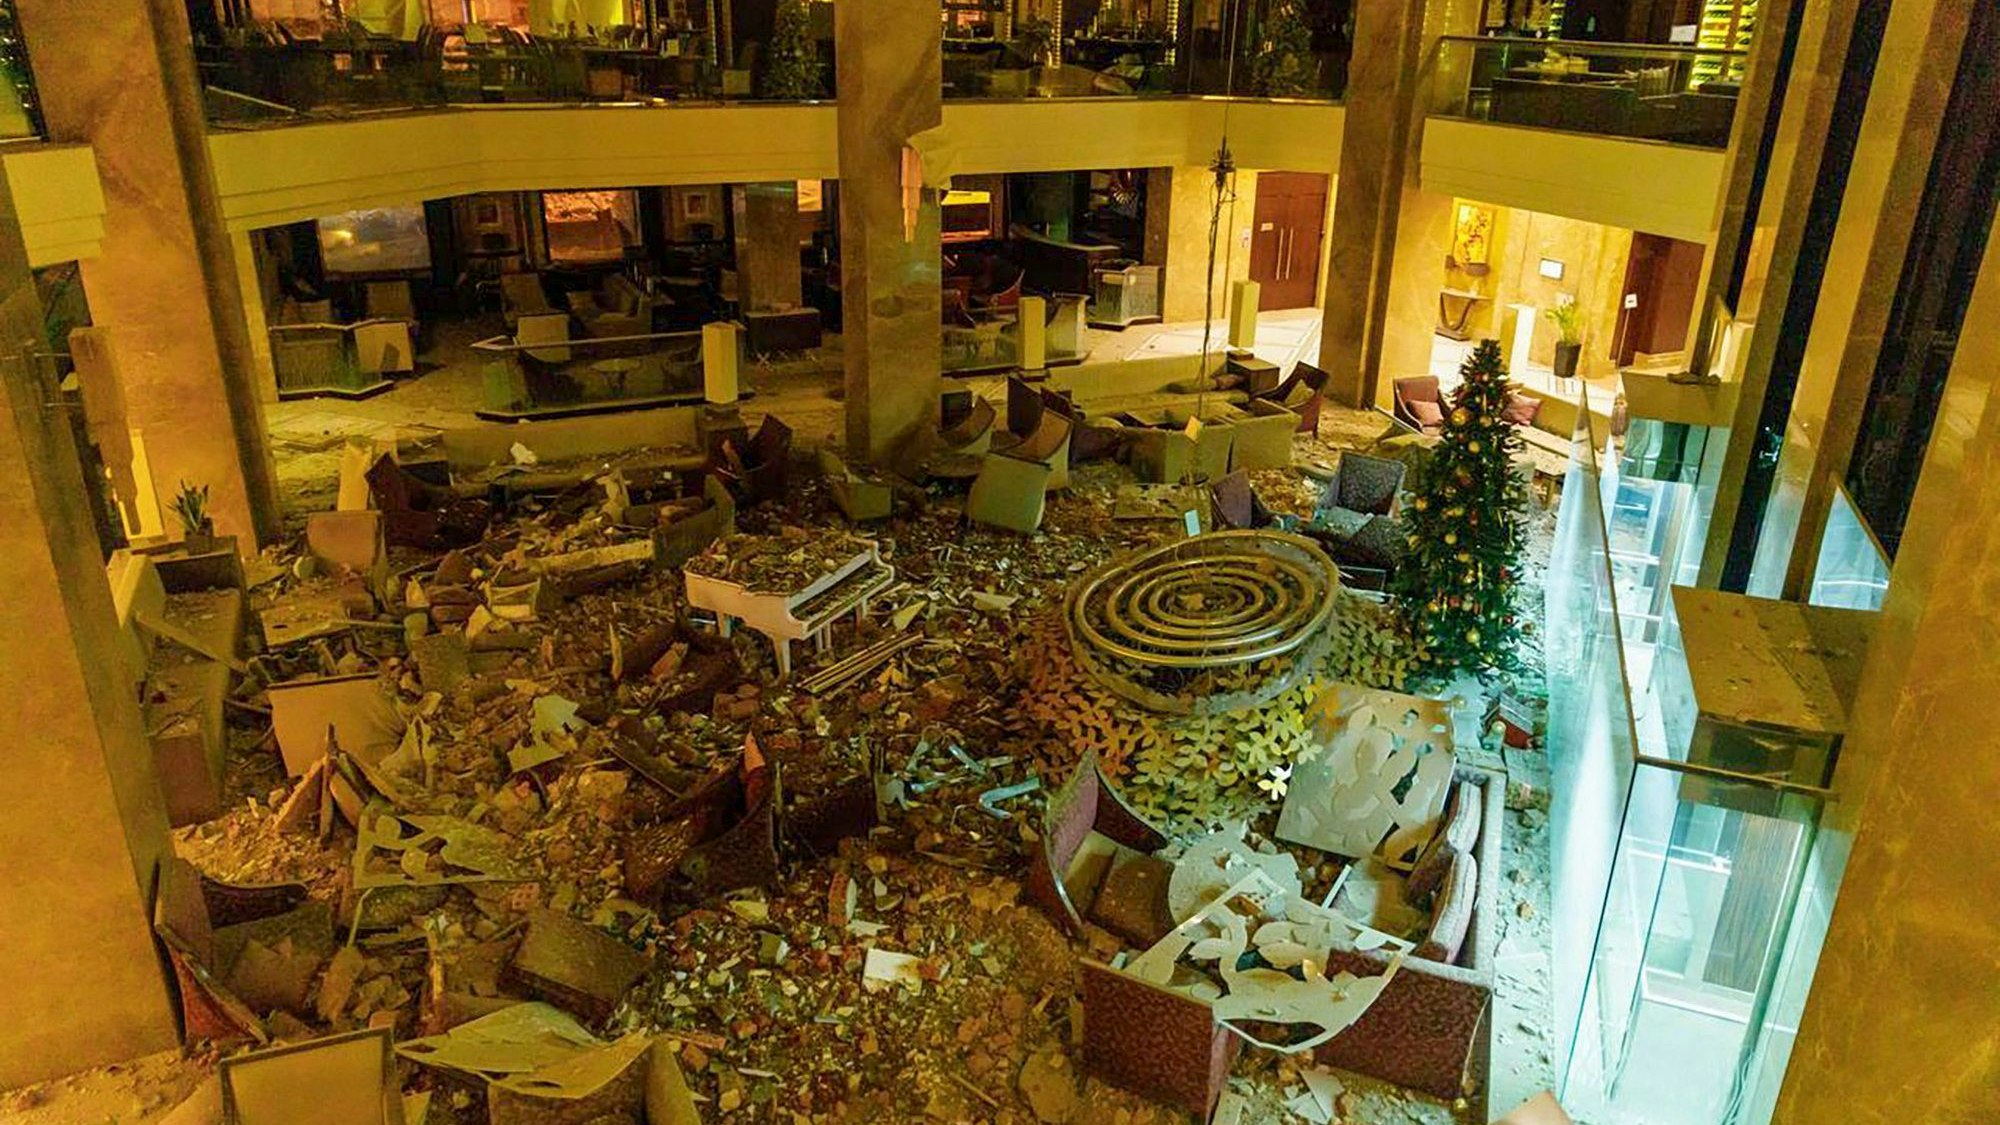 Eine Hotel-Lobby ist nach einem Raketenangriff auf Charkiw zerstört. Trümmerteile liegen in der gesamten Lobby verteilt.